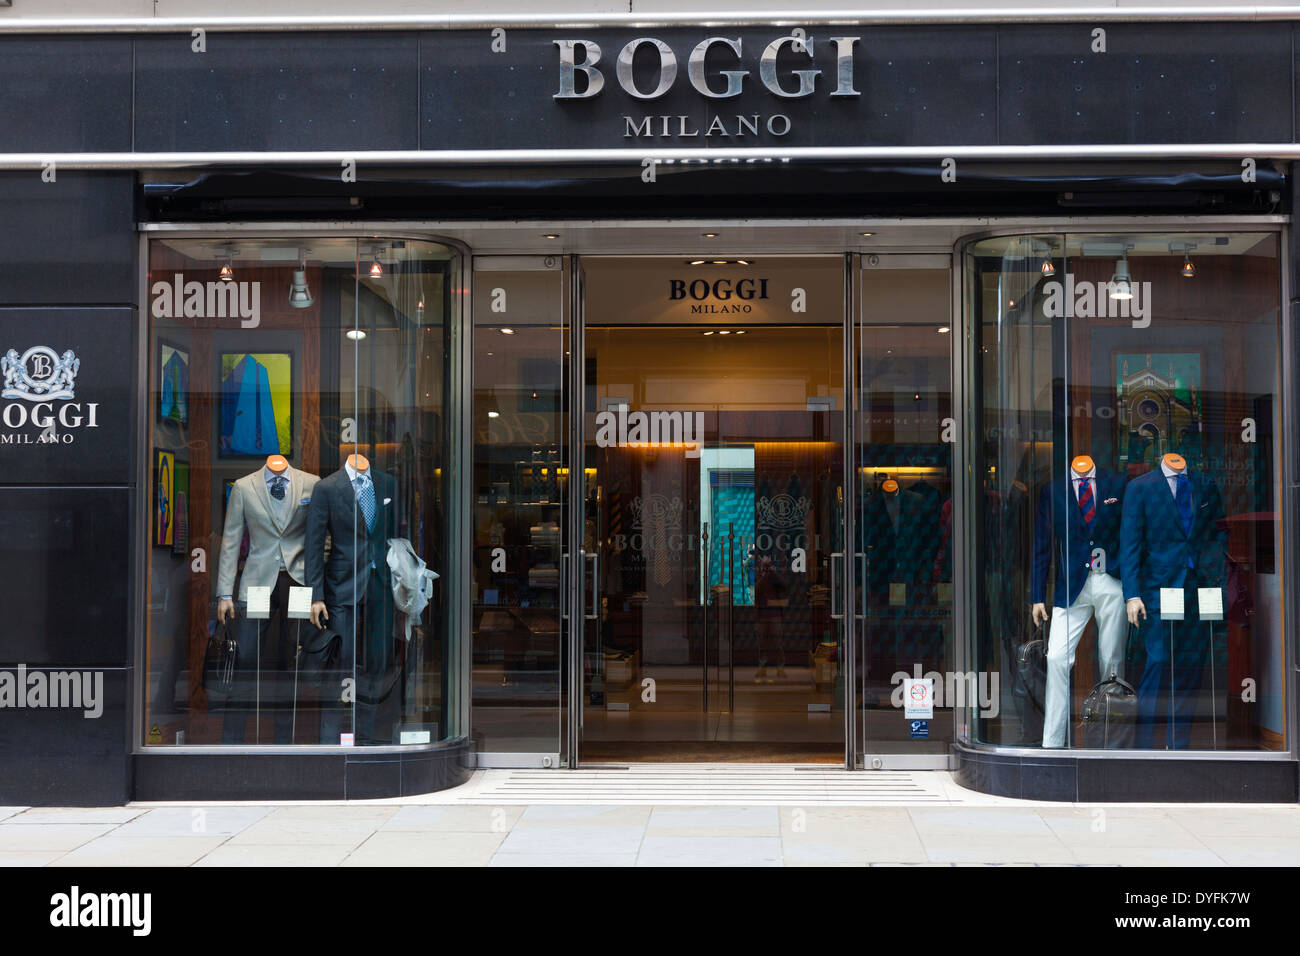 Boggi, uomini designer ware, Jermyn Street, Londra, Regno Unito Foto Stock